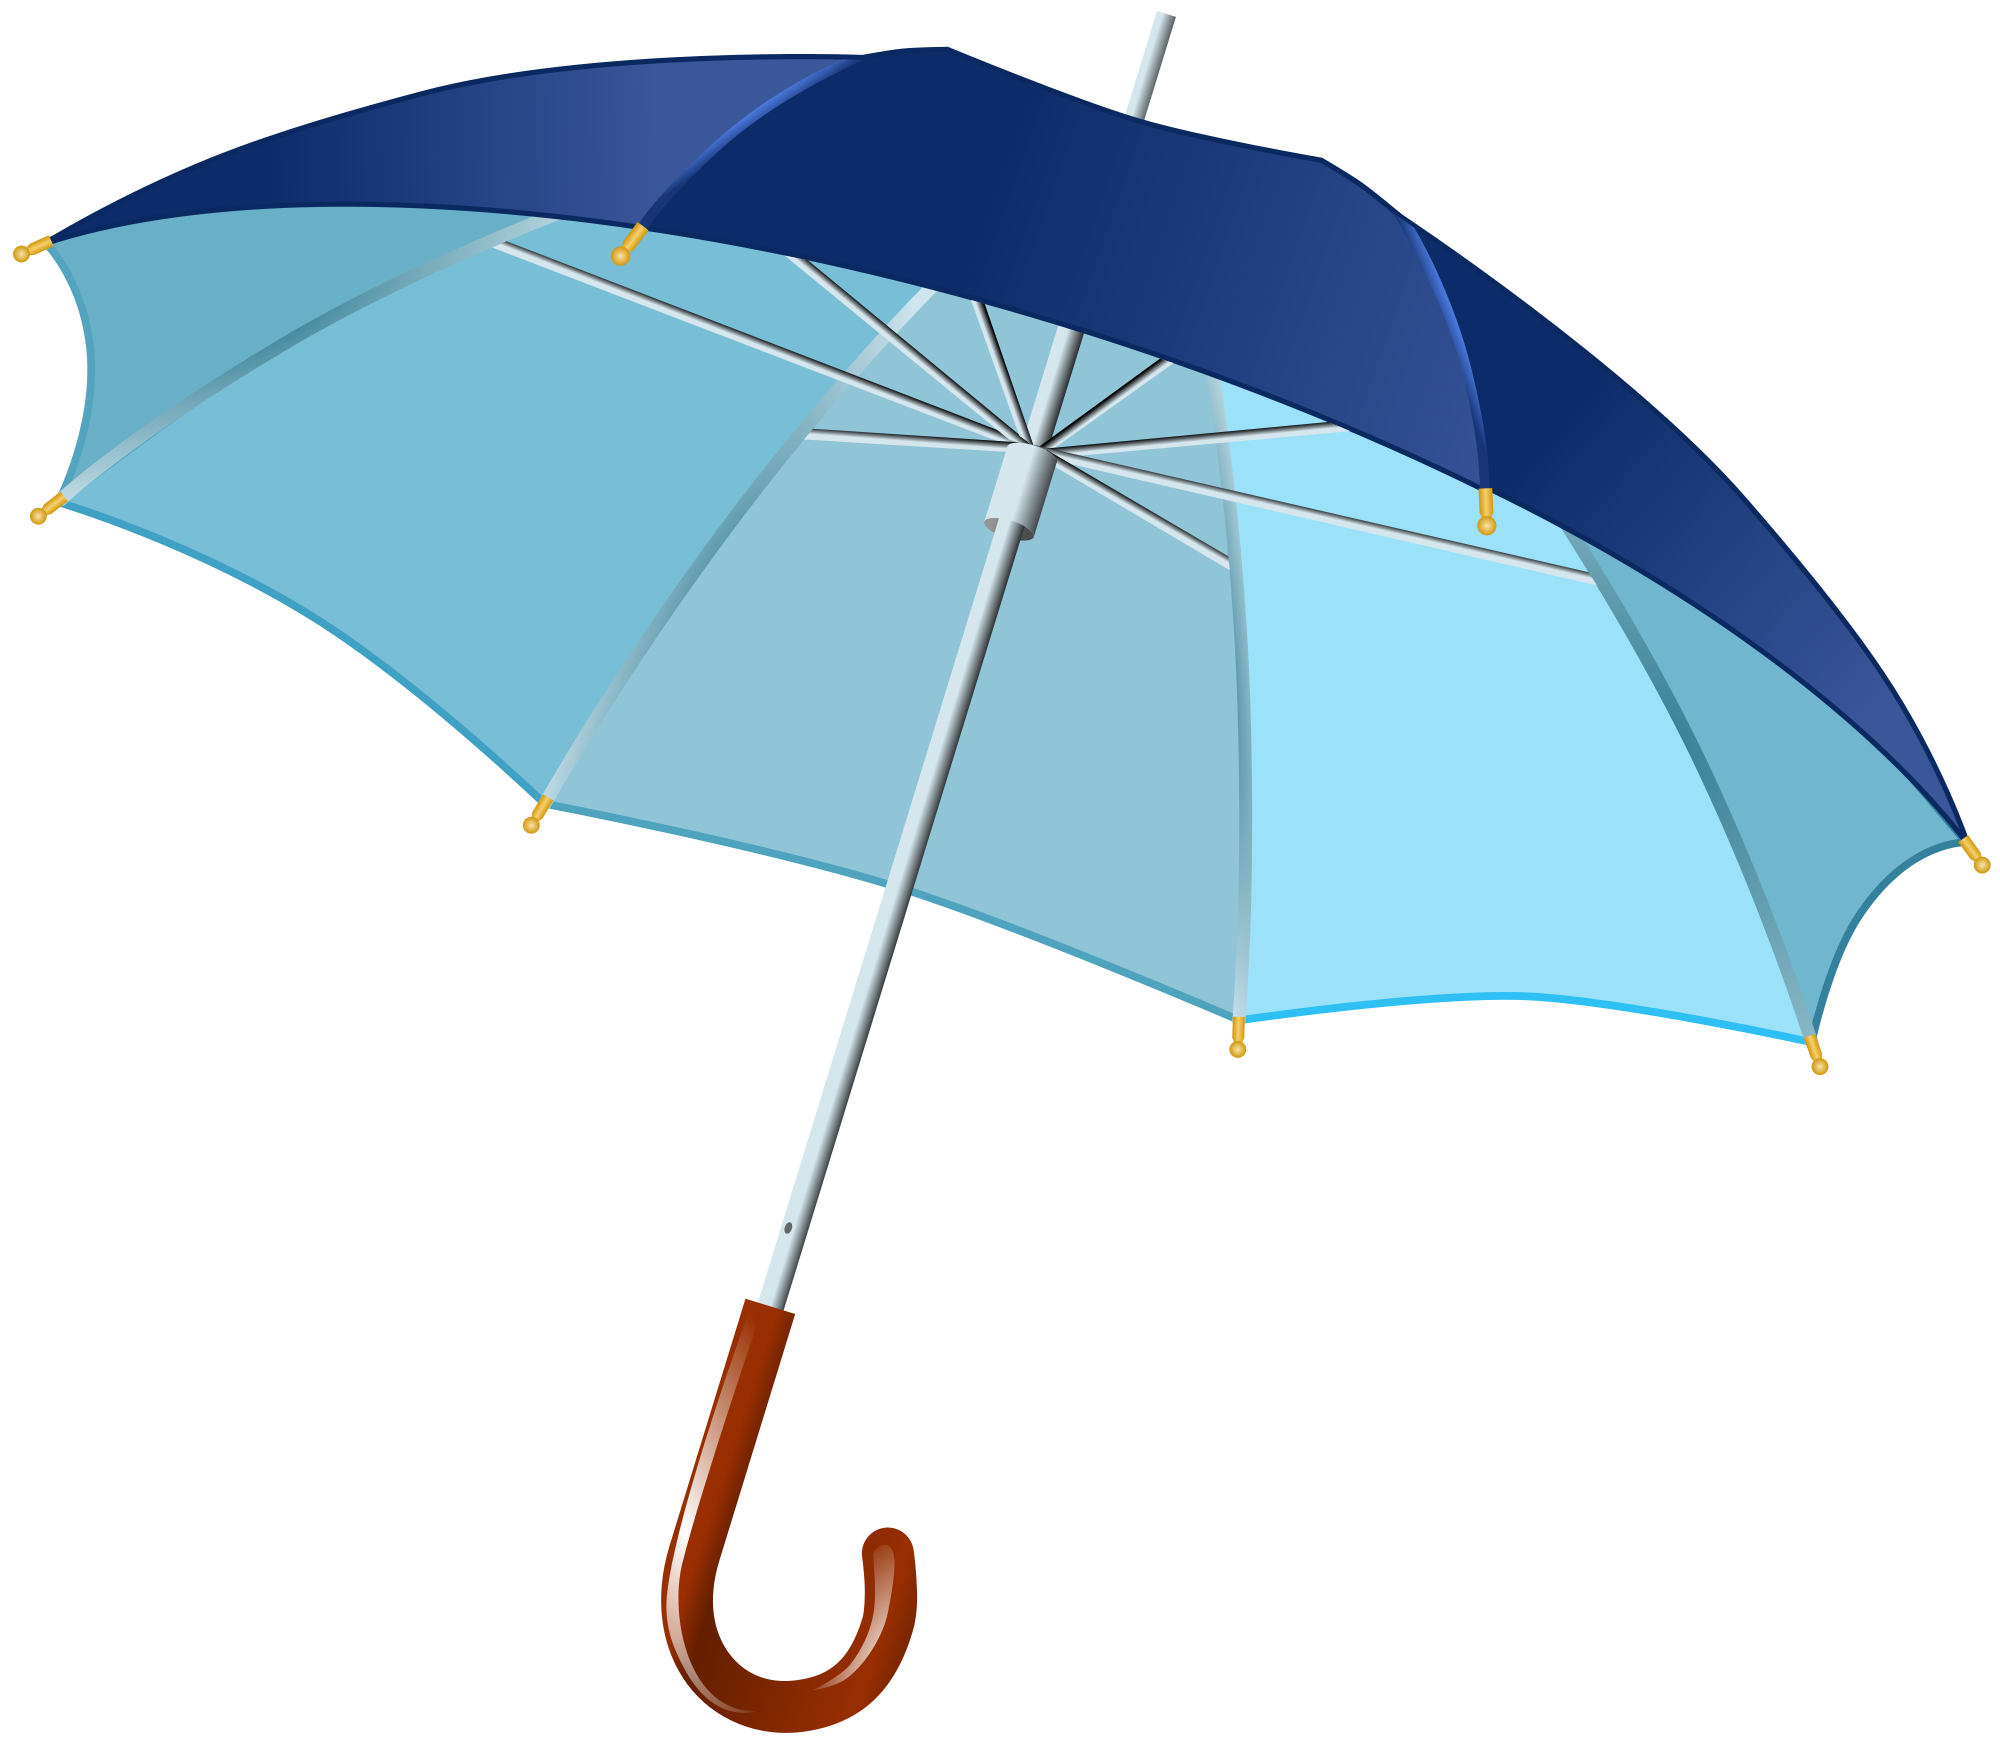 Umbrella images